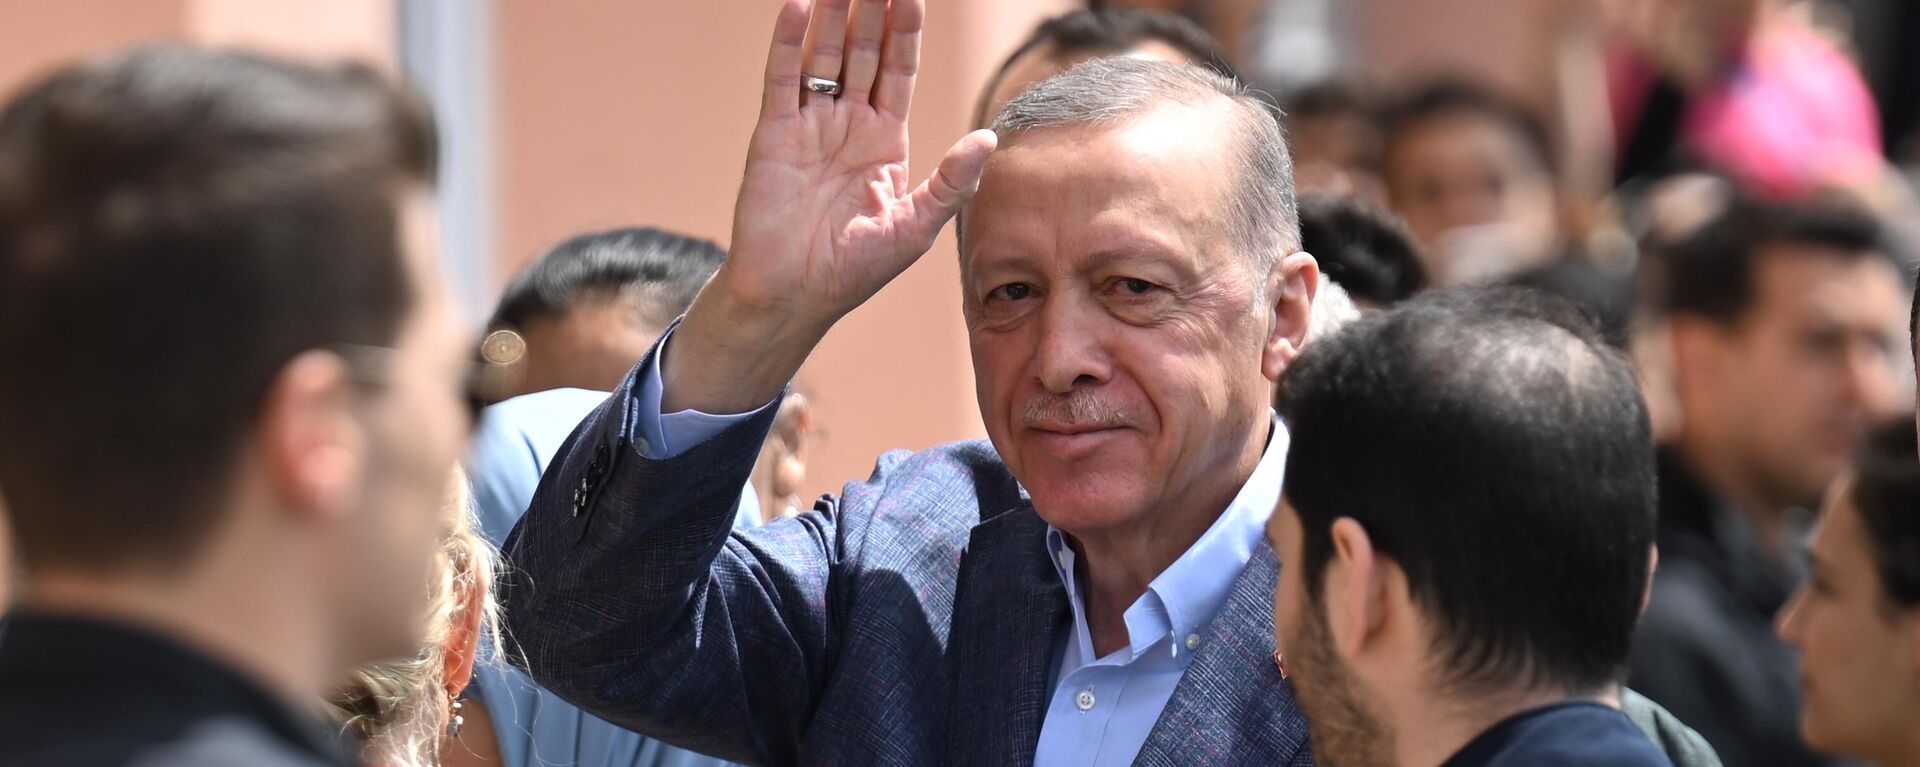 Tổng thống Thổ Nhĩ Kỳ Recep Tayyip Erdogan tại điểm bỏ phiếu trong cuộc bỏ phiếu trong cuộc tổng tuyển cử ở Istanbul - Sputnik Việt Nam, 1920, 15.05.2023